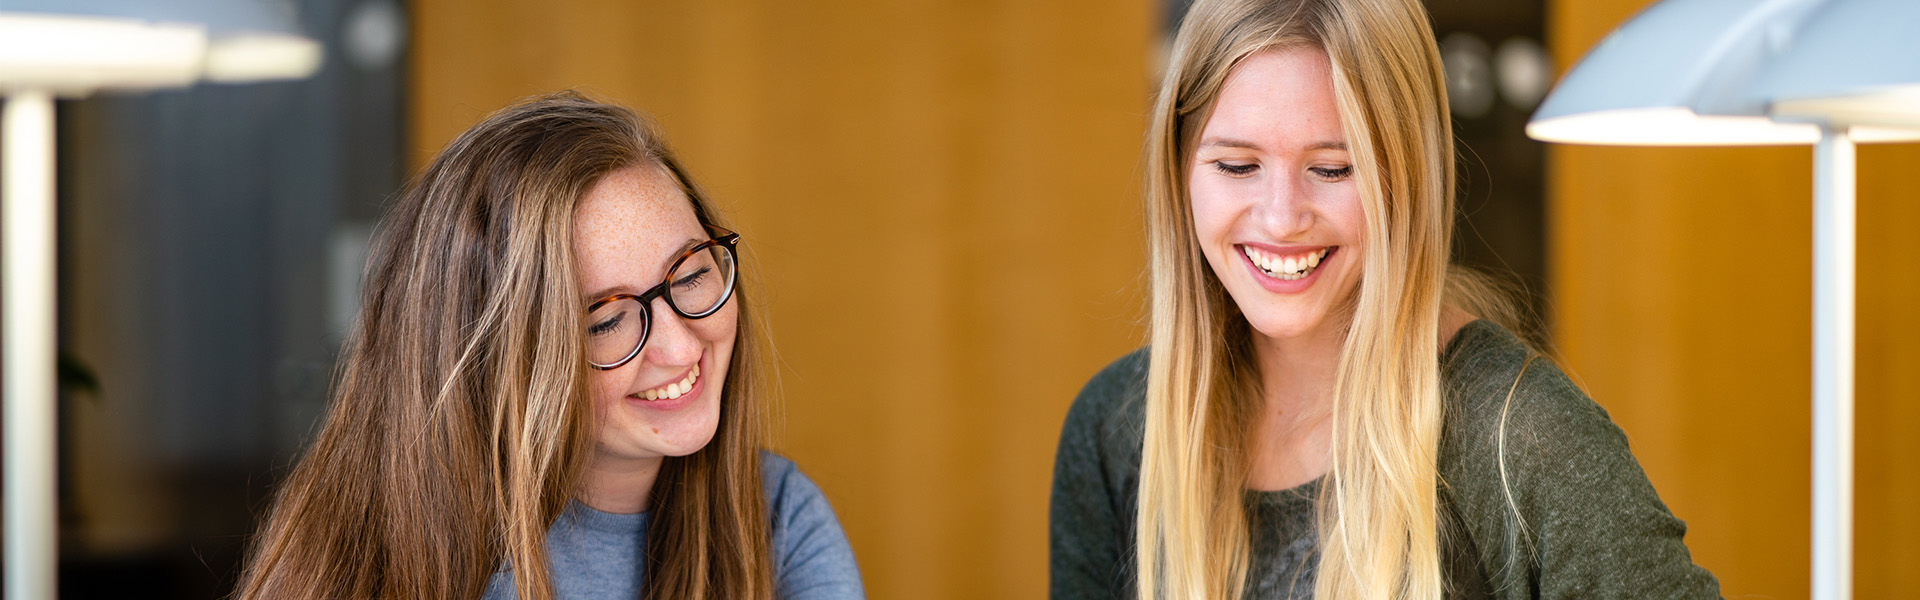 Master of Arts Fachübersetzen Wirtschaft Deutsch/Polnisch - Zwei lachende Studentinnen lesen etwas von einem Zettel ab.